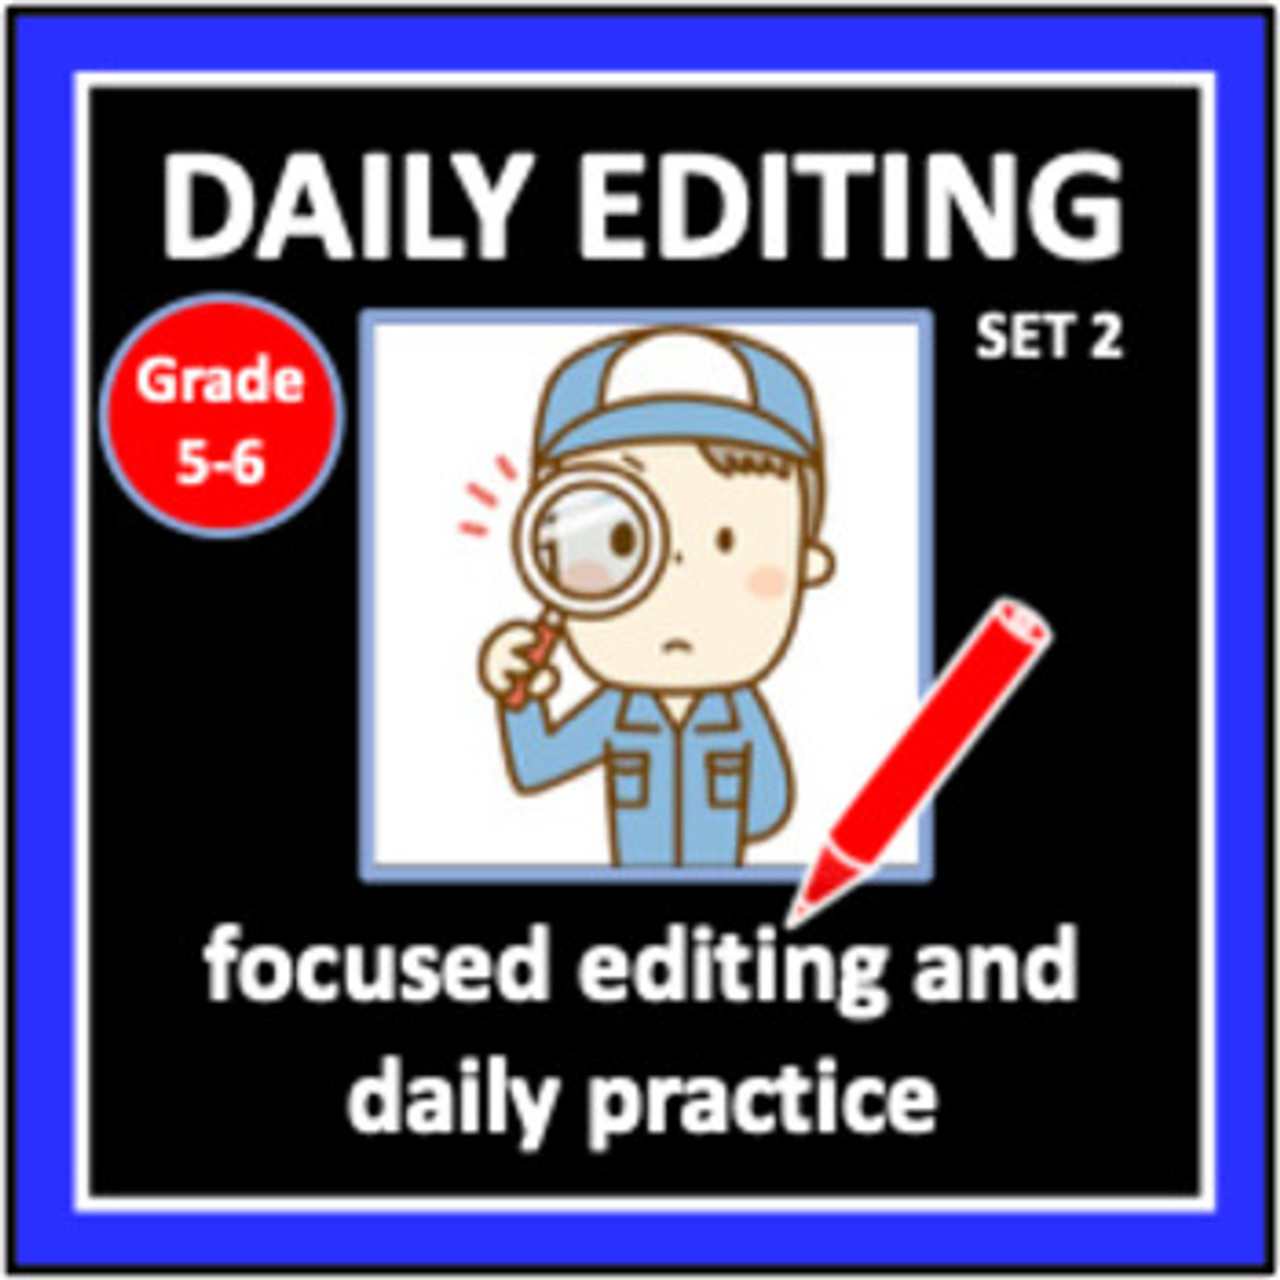 Daily Editing: Set 2